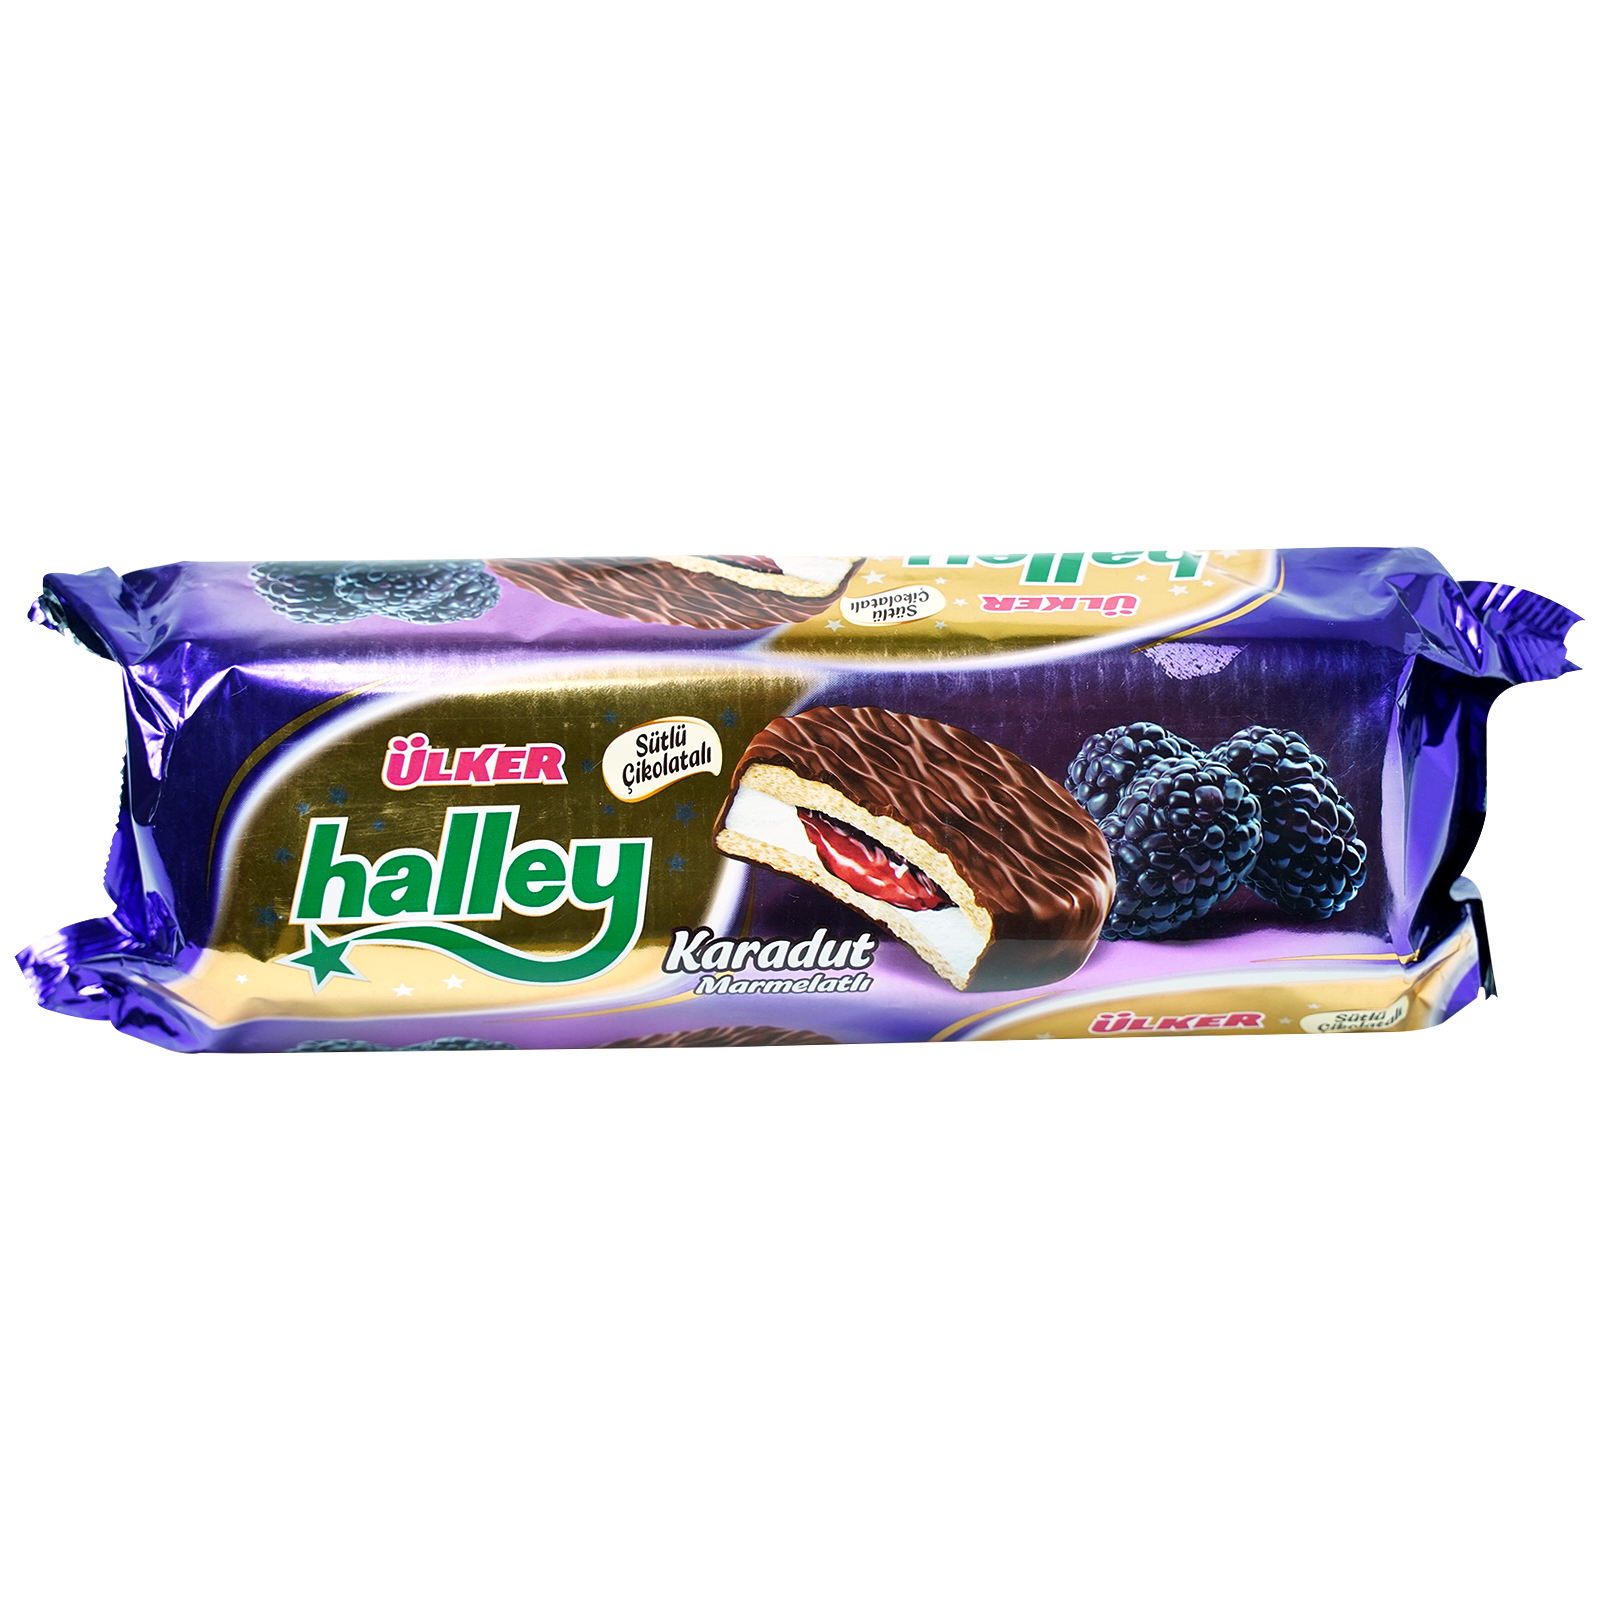 Печенье Ulker Halley Karadut с молочным шоколадом 236 г